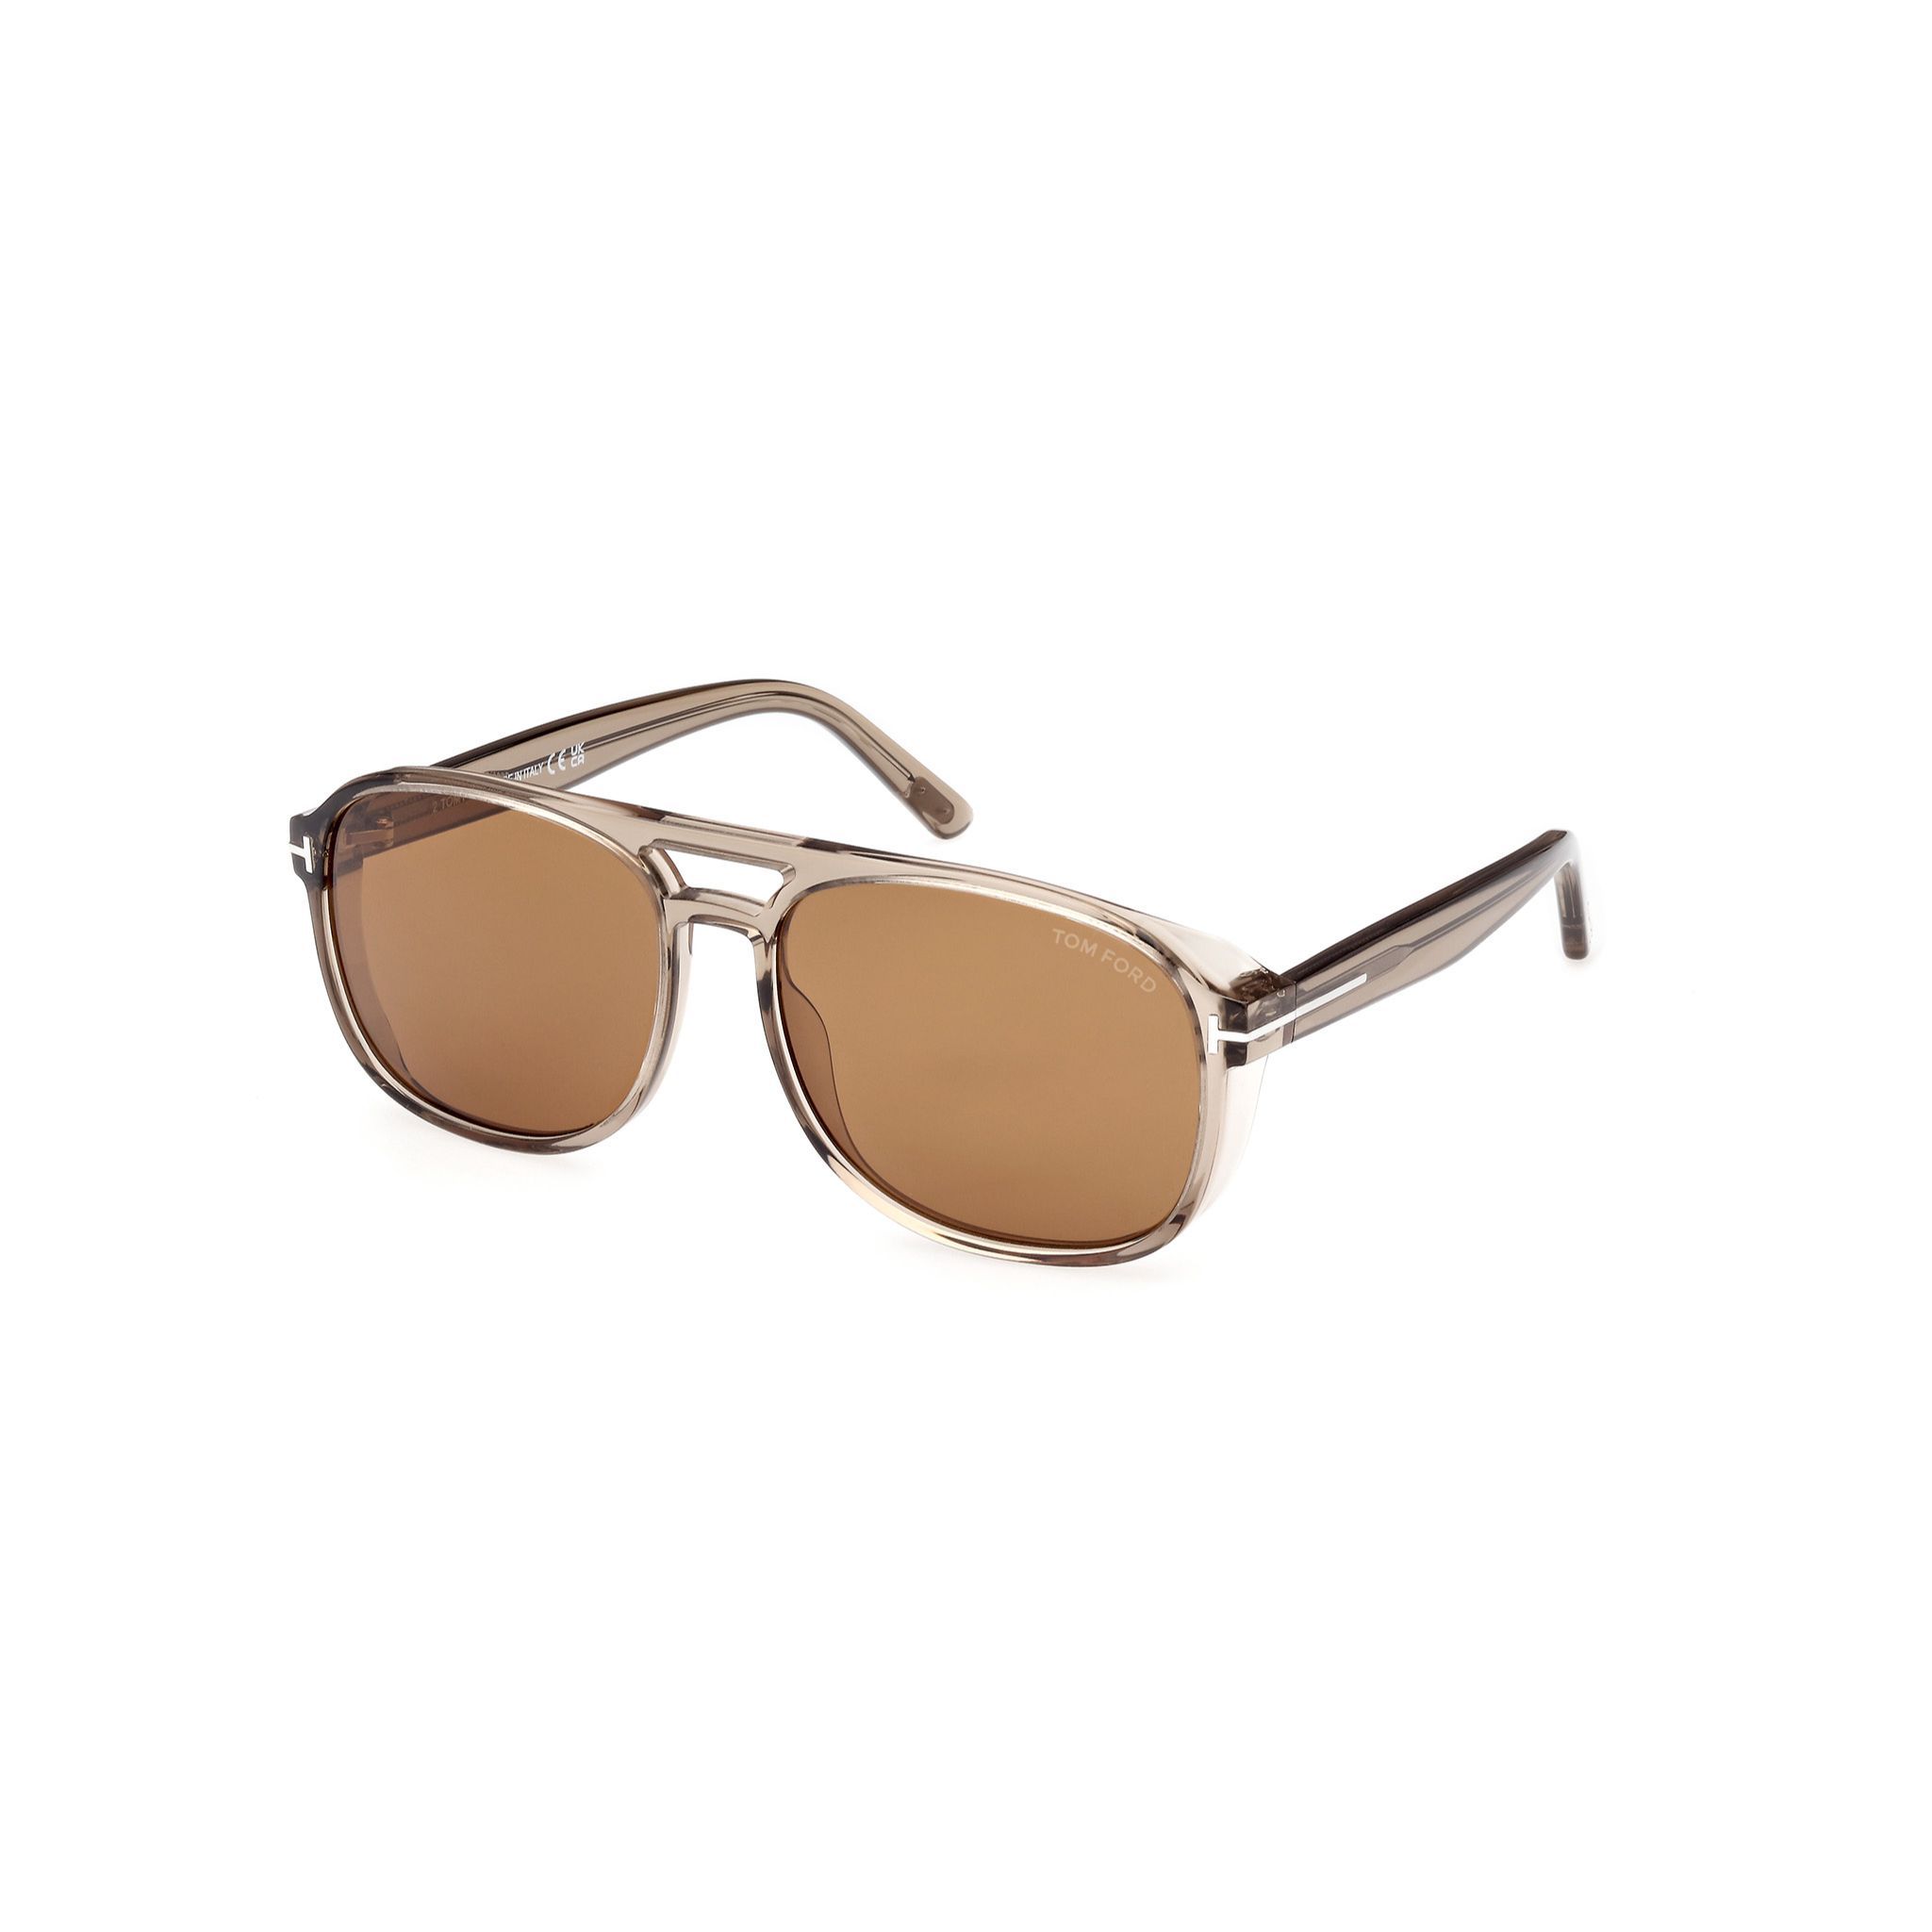 FT1022 Pilot Sunglasses 45E - size 58